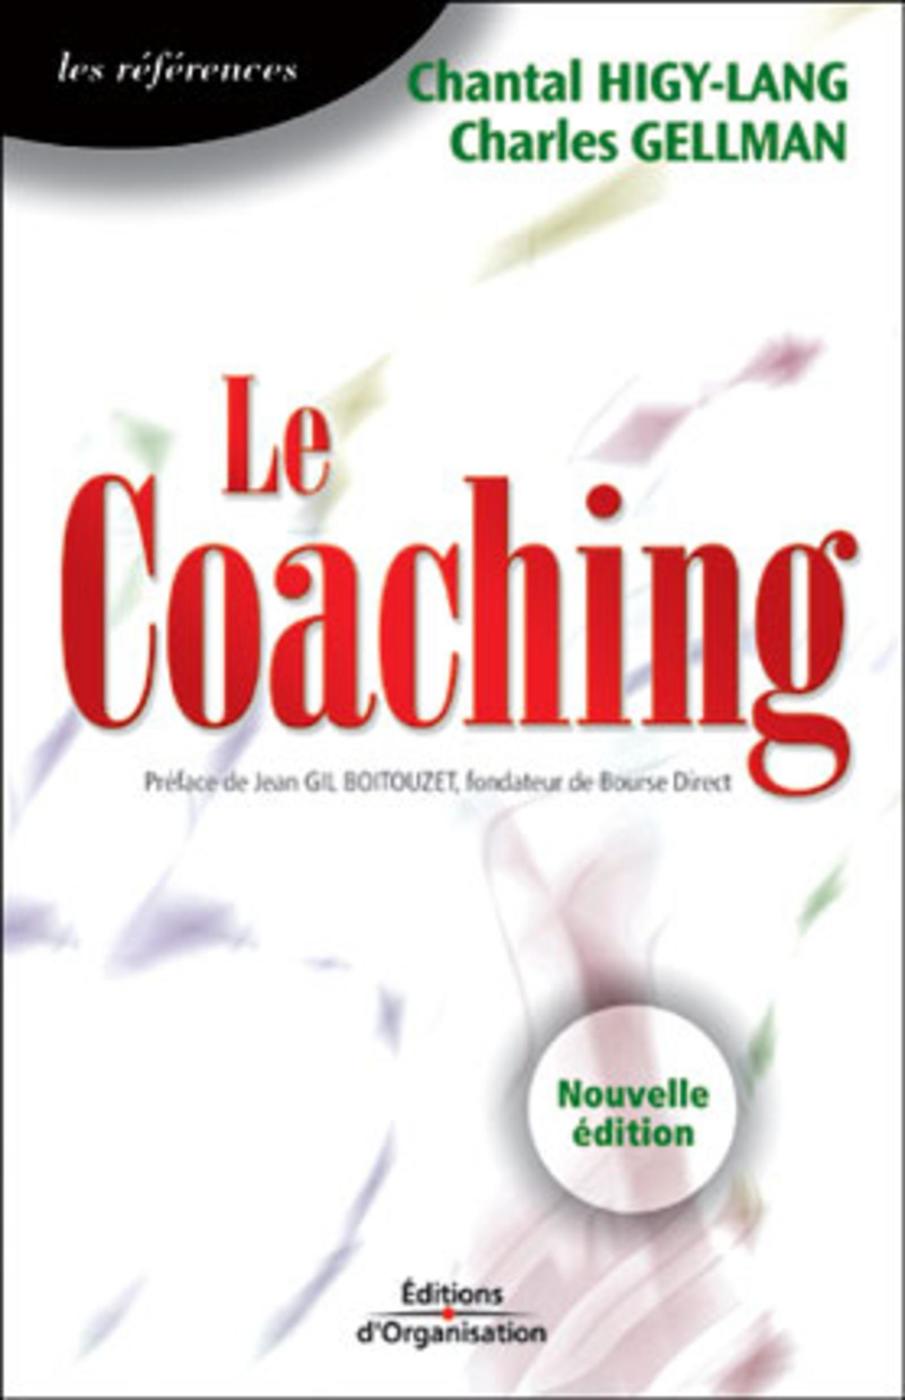 PDF - Le Coaching Chantal Higy-Lang Résumé
Osez le coaching !
Coaching ou développement personnel ? Dans l